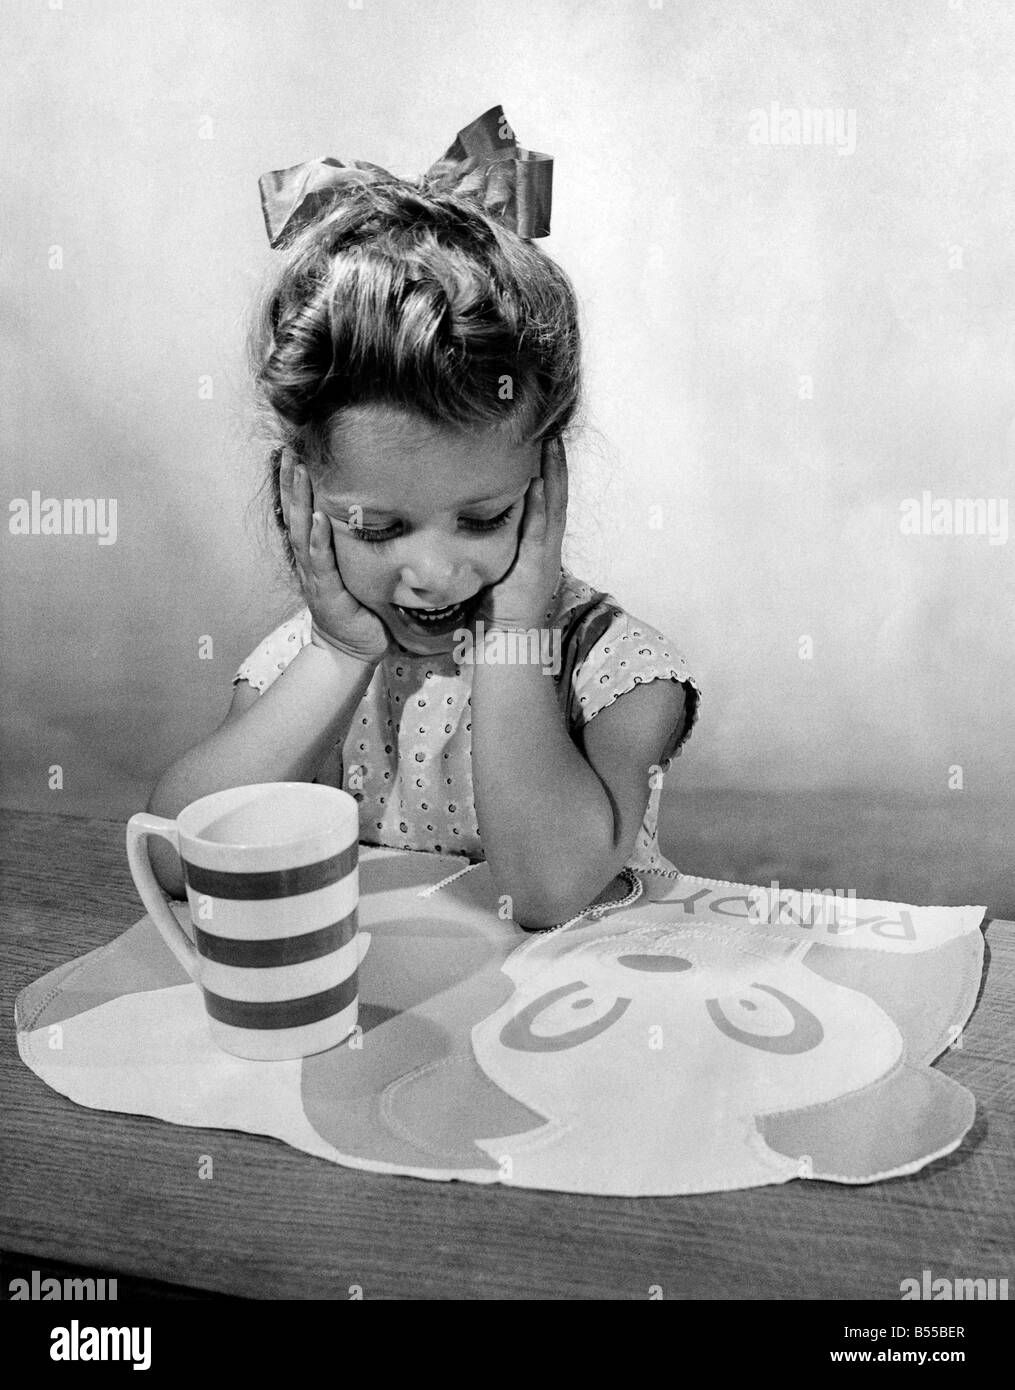 N. di piangere sopra split latte: questo bambino la tabella MAT ha tantissimo spazio per un piatto e un bicchiere e se il piccolo si deve versare il suo latte...beh non vi è la necessità di lacrime, perché una salviettina con un panno umido è tutto quello che serve. I tappeti sono realizzati in rosa, blu, bianco e lucidare con disegni e modelli che includono un panda, un gattino ed un elefante 4s. 11d. ciascuno. Settembre 1955 P012656 Foto Stock